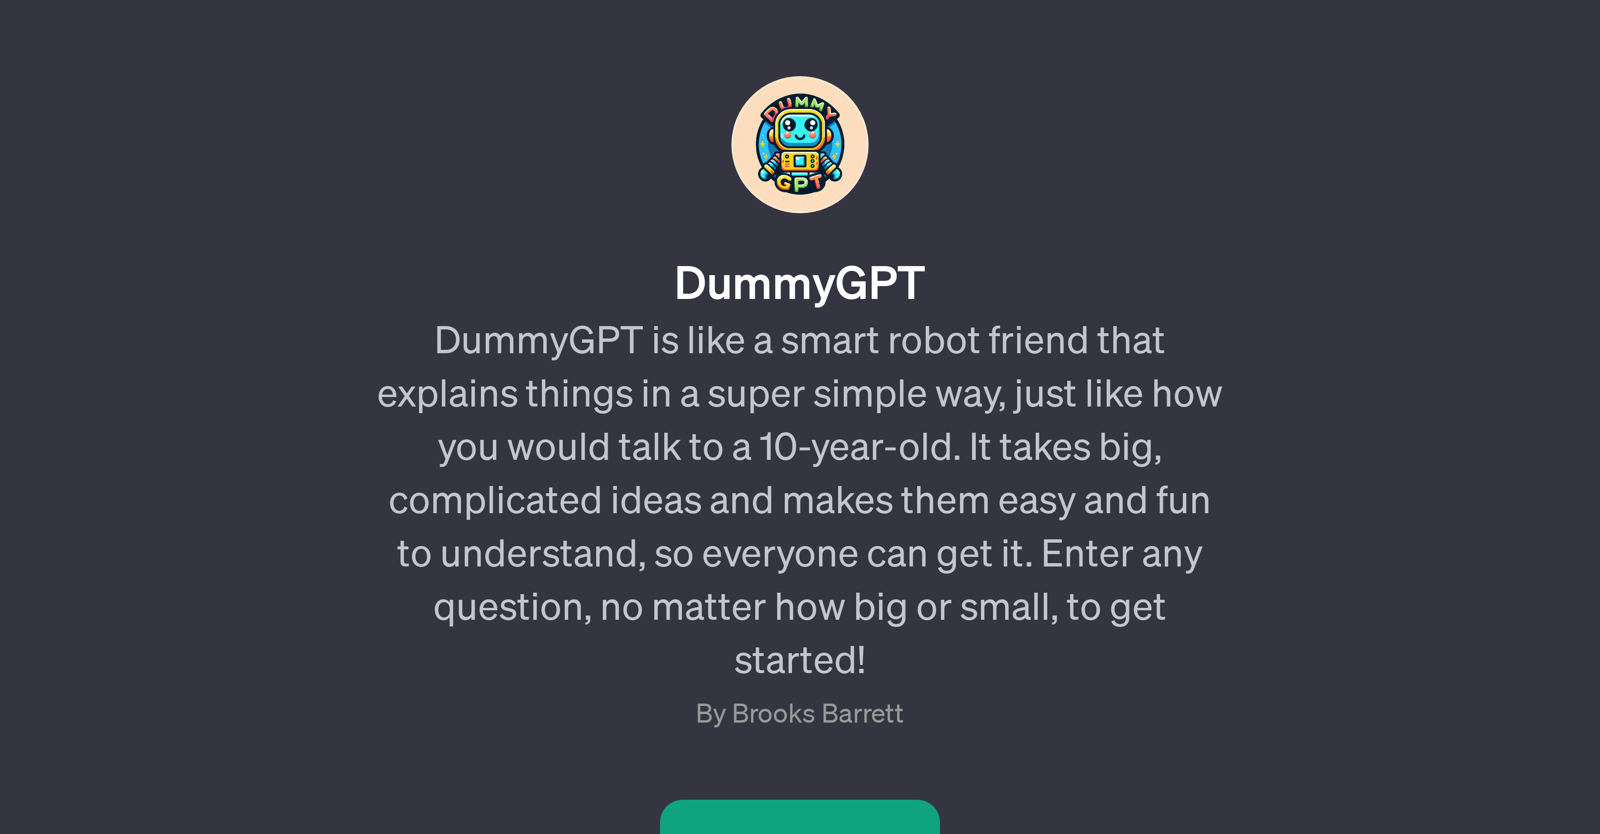 DummyGPT website